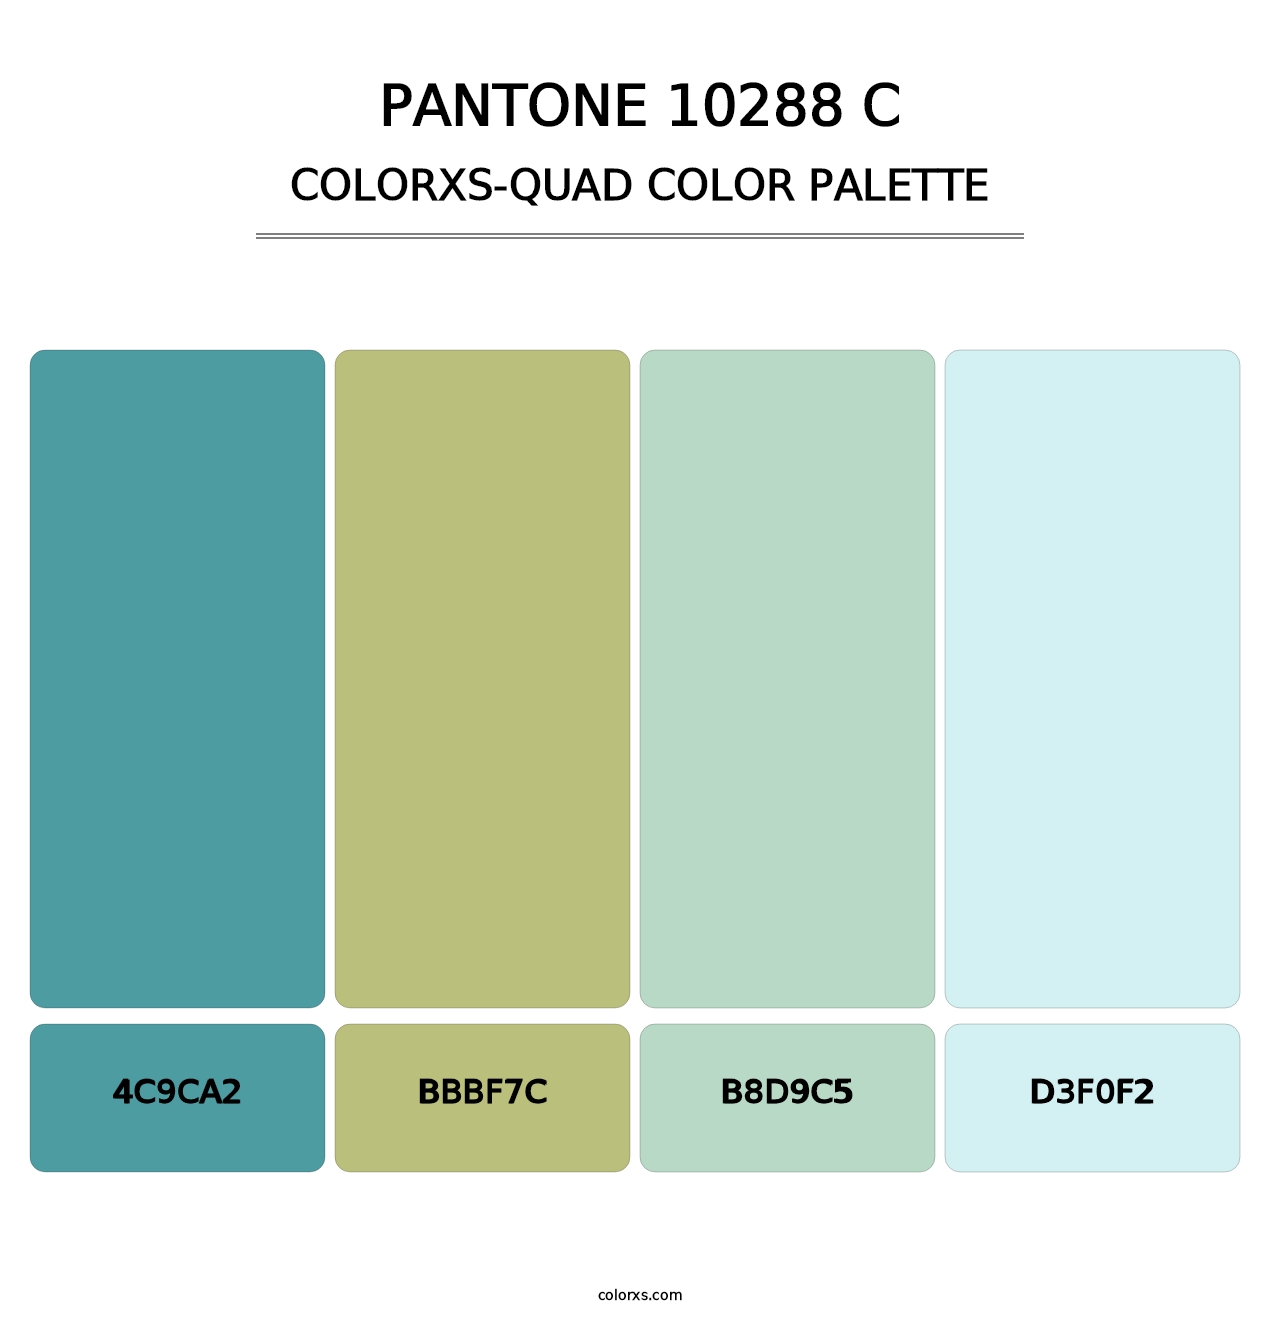 PANTONE 10288 C - Colorxs Quad Palette